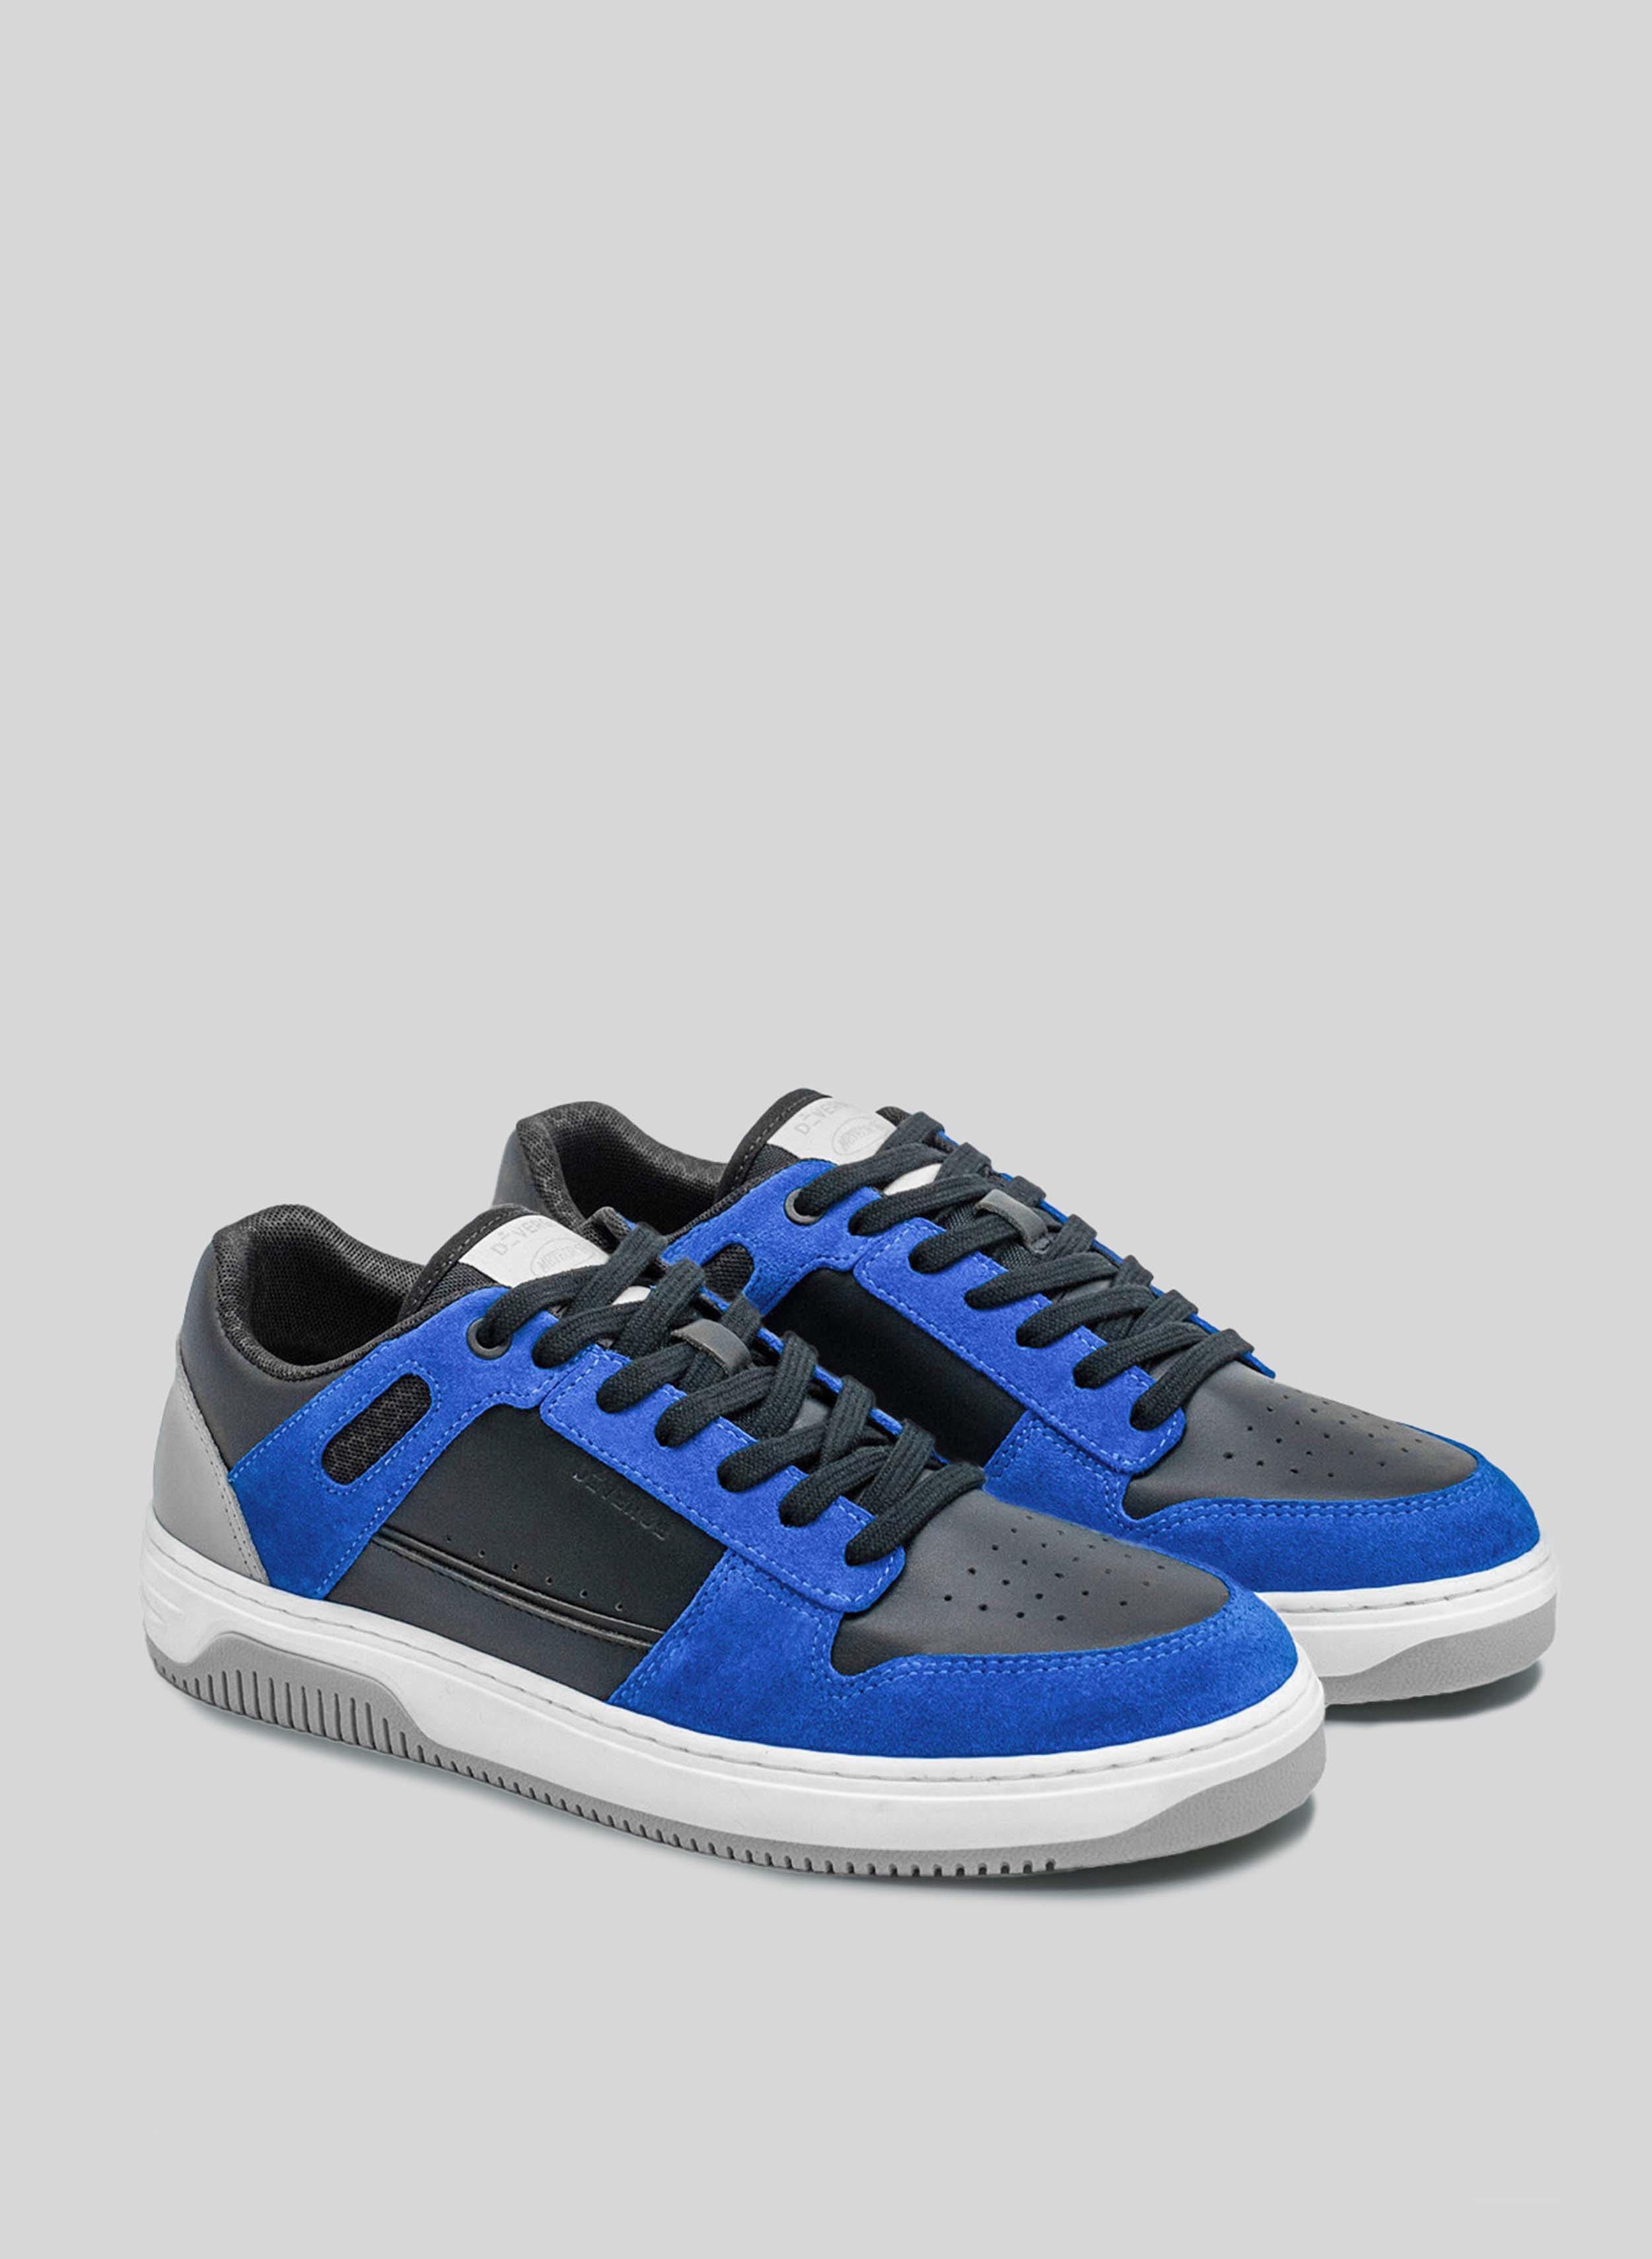 sneakers bleu et noir avec semelle blanche et grise par Diverge, promouvant l'impact social et les chaussures personnalisées à travers le projet imagine. 